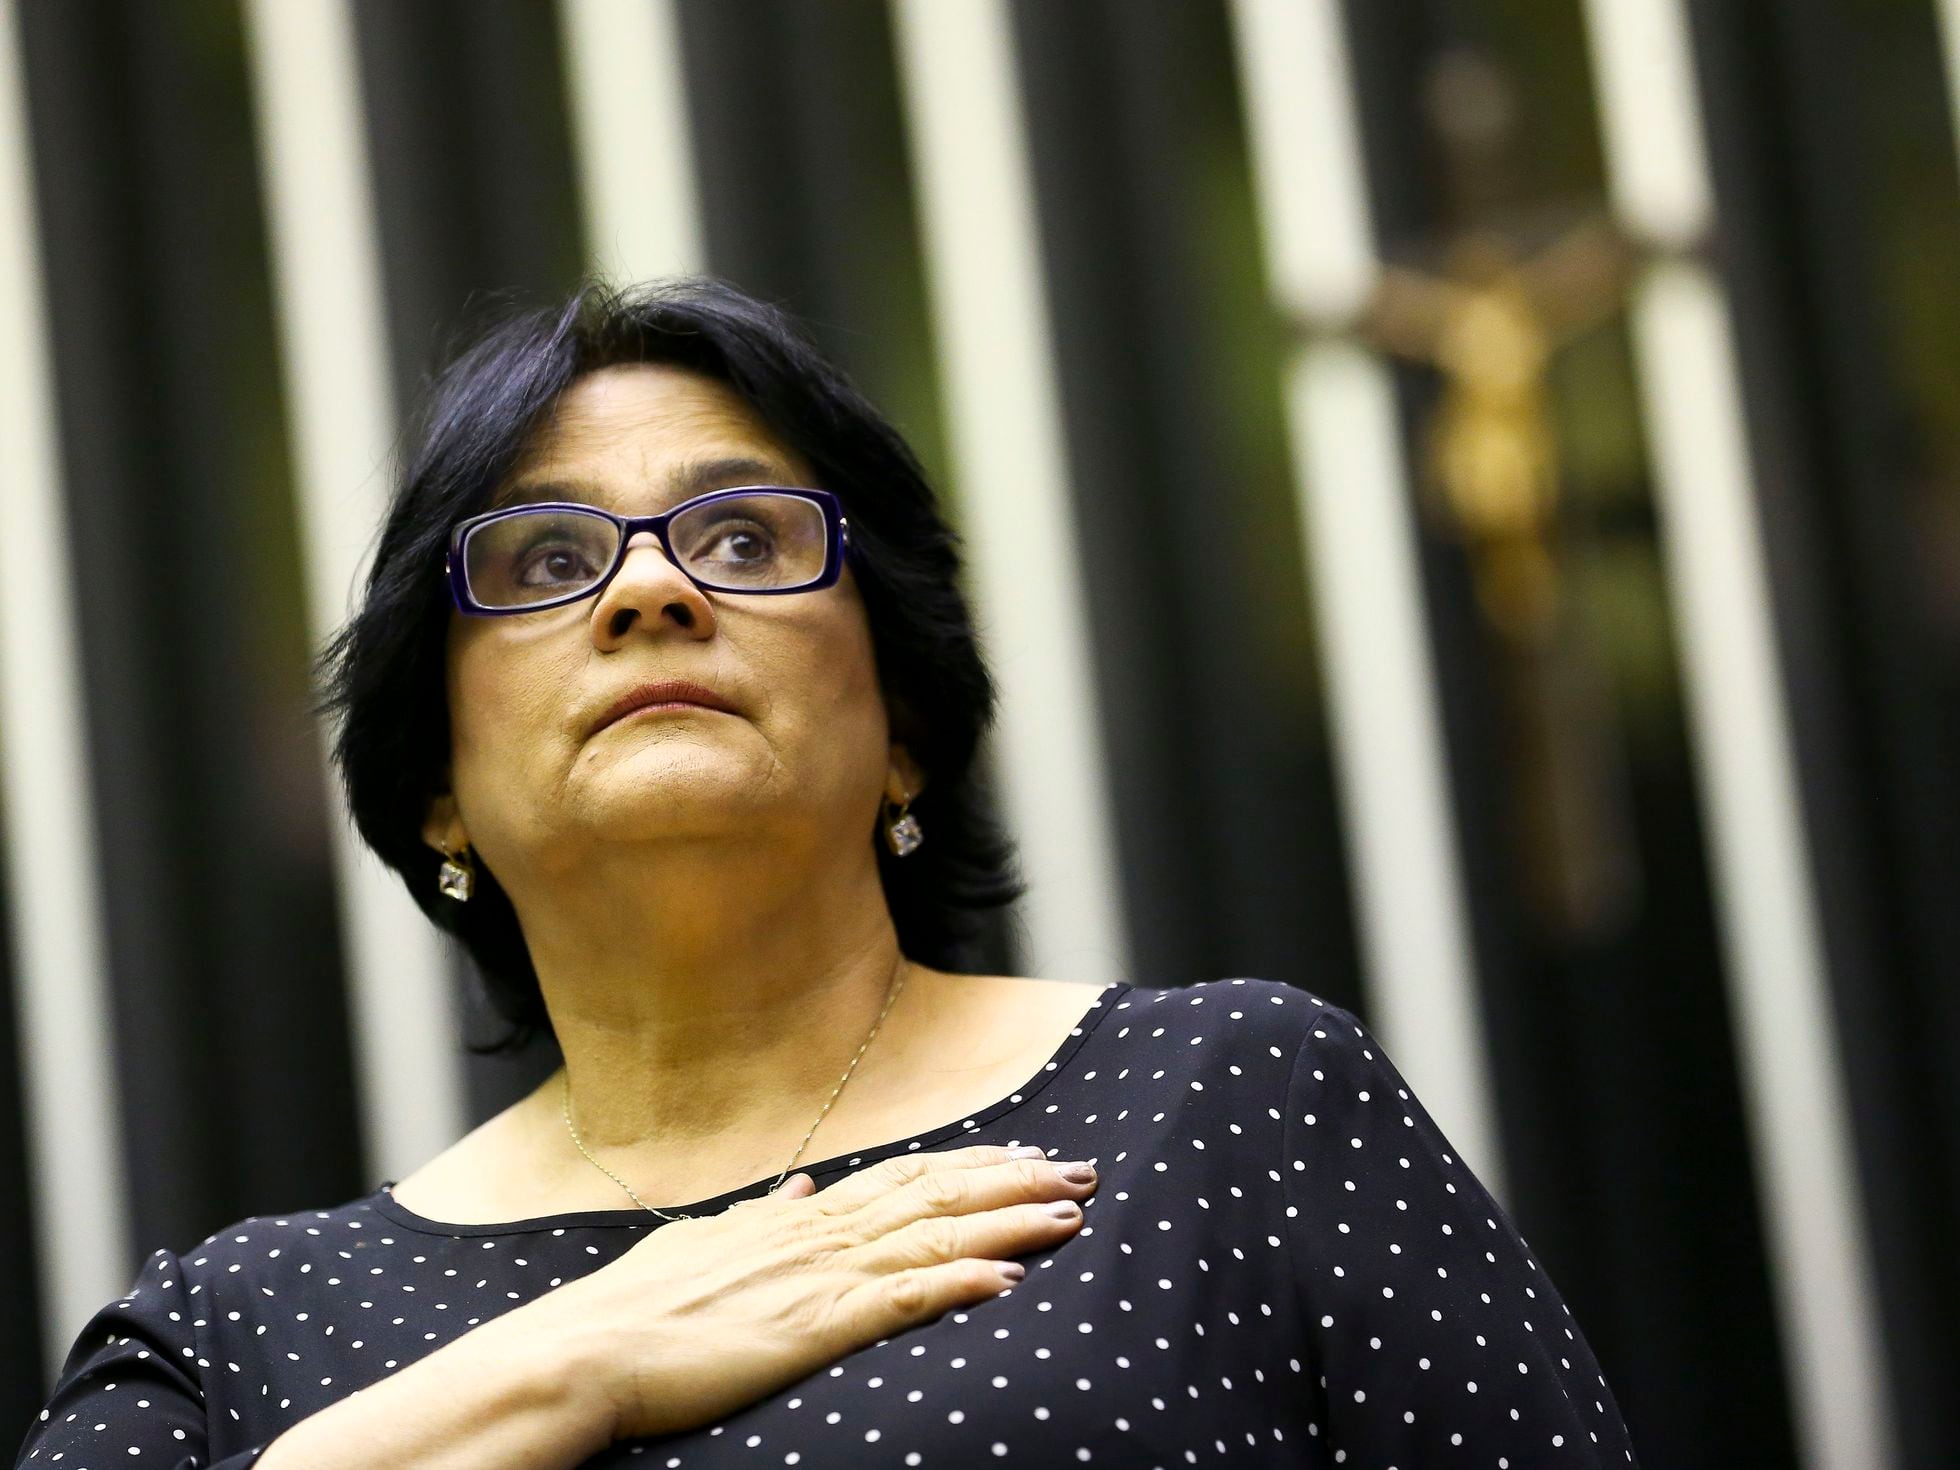 Damares reconhece abstinência sexual como 'política pública em construção'  - Jornal O Globo